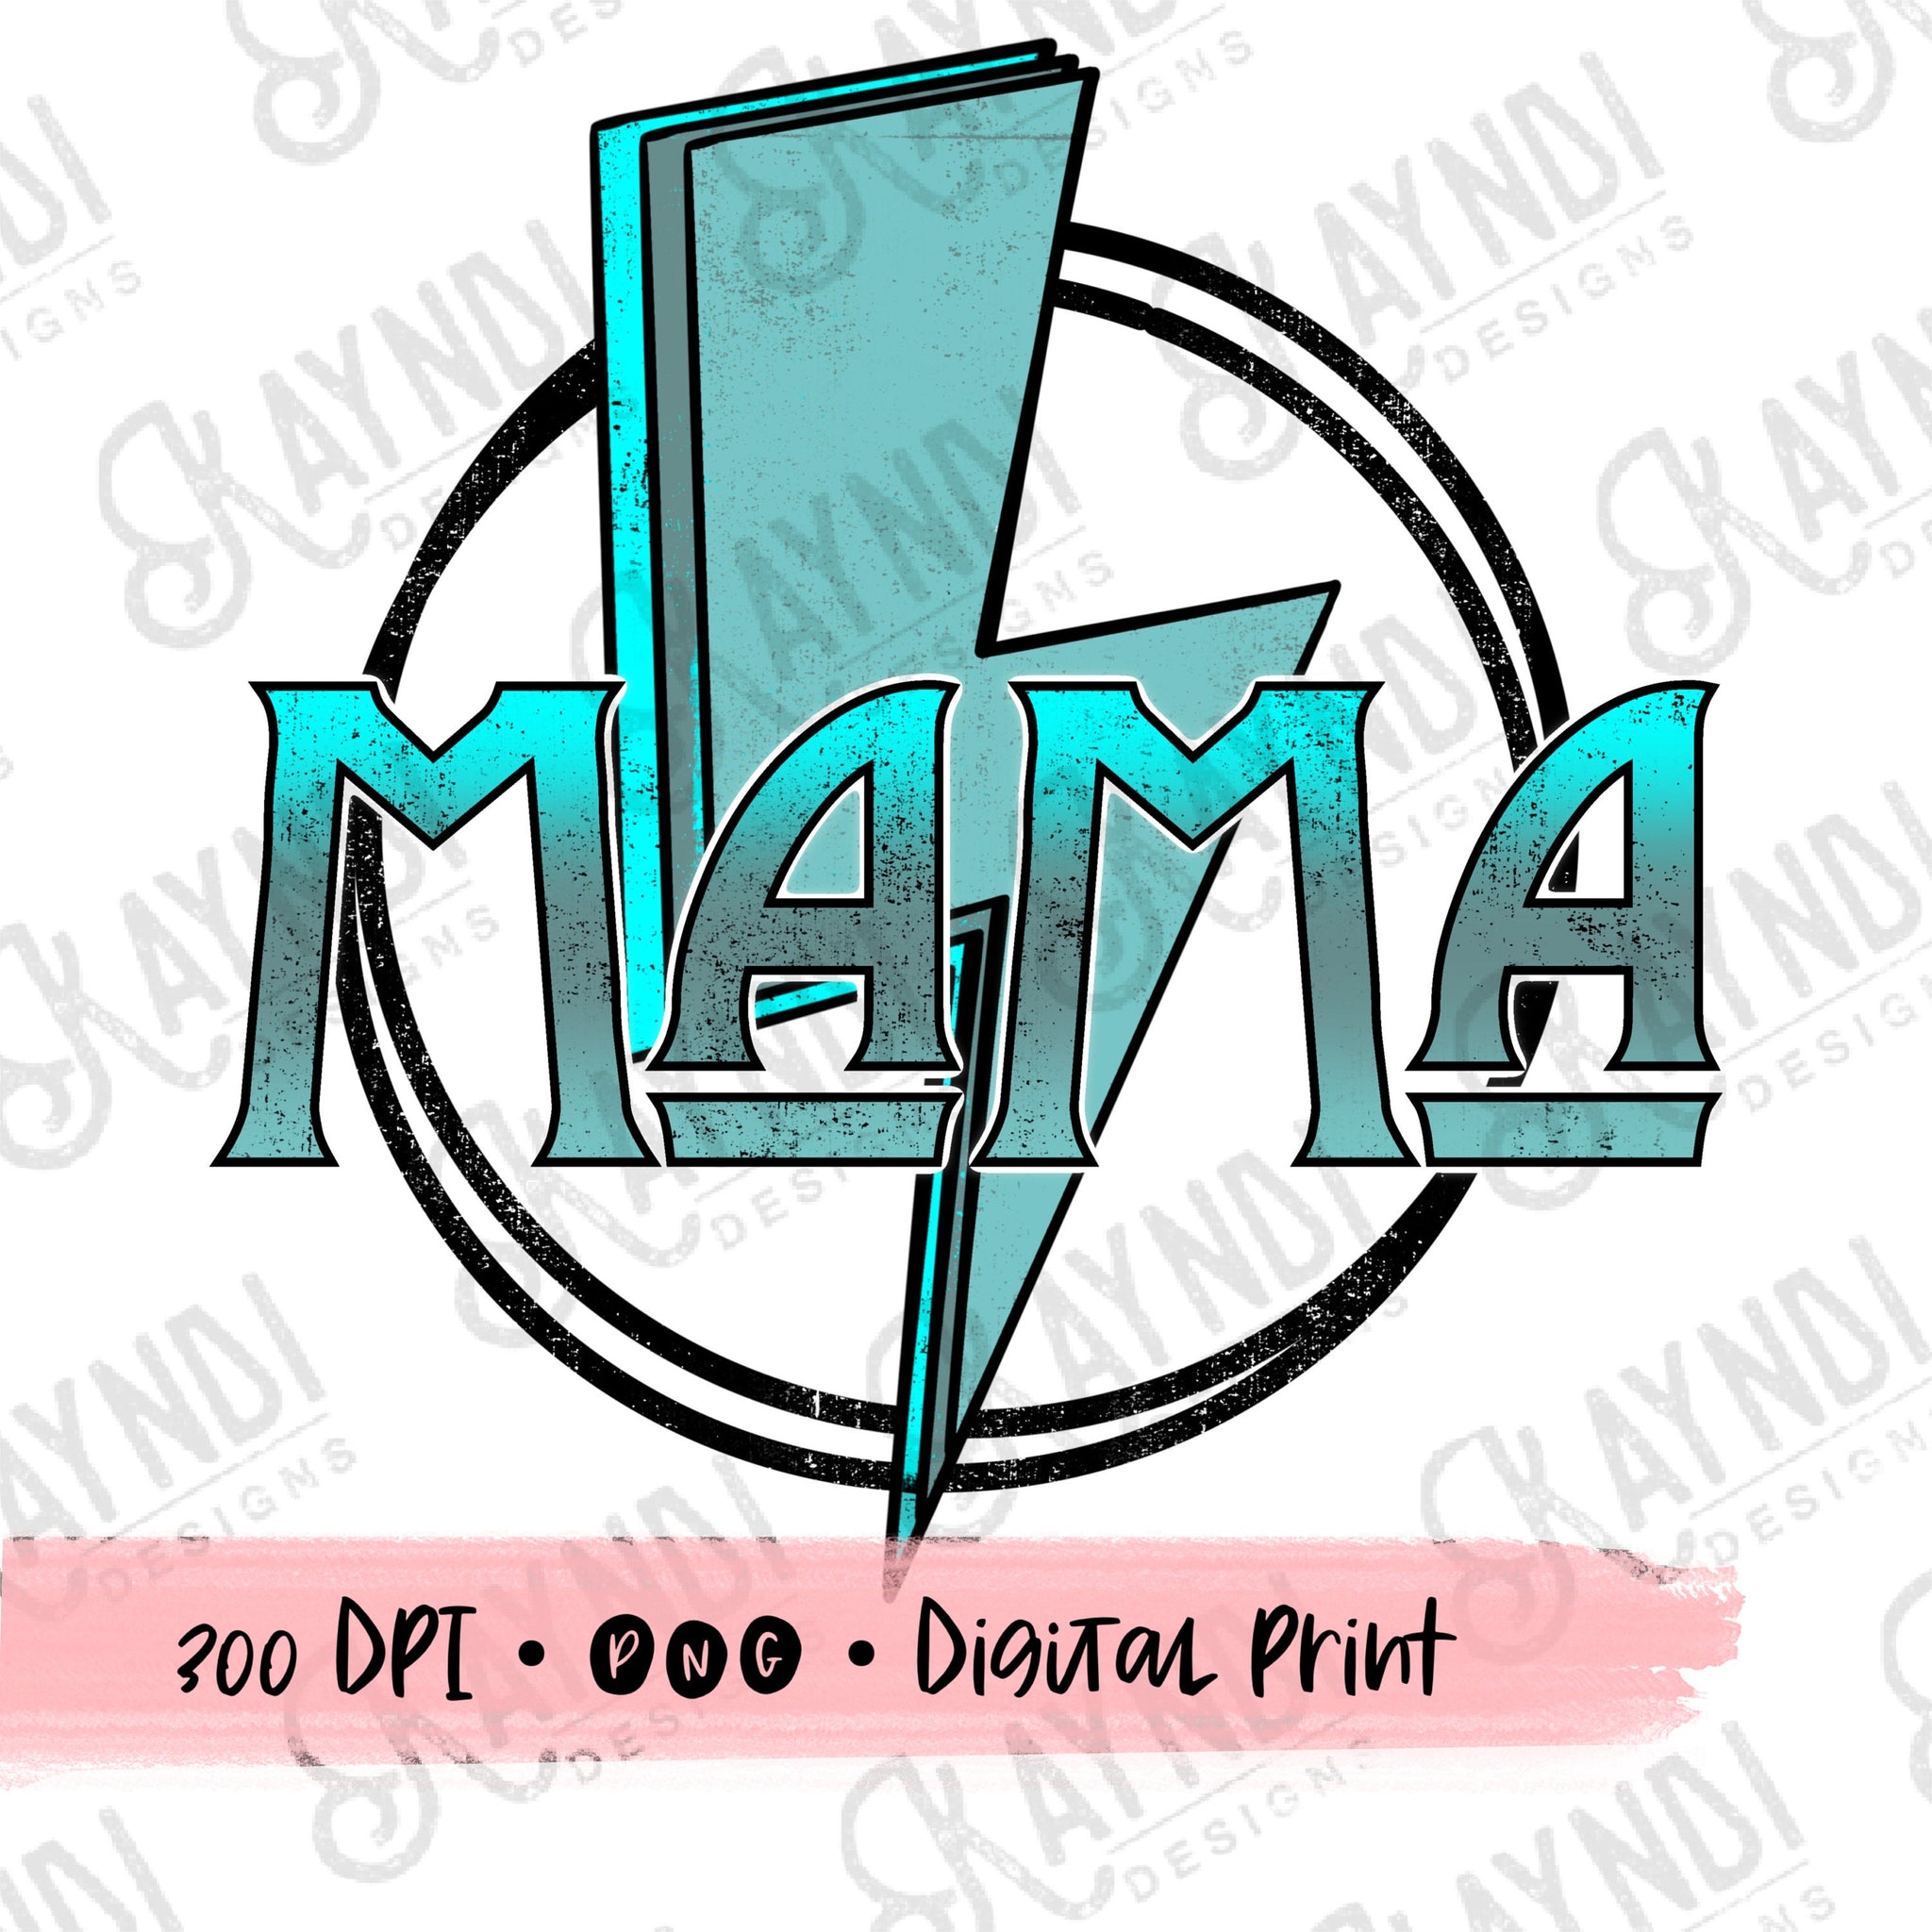 Mama Lightning Bolt Retro Sublimation Design PNG Digital Download Printable Grunge Funky Teal Aqua Blue Groovy Vintage Mom Momma Thunder